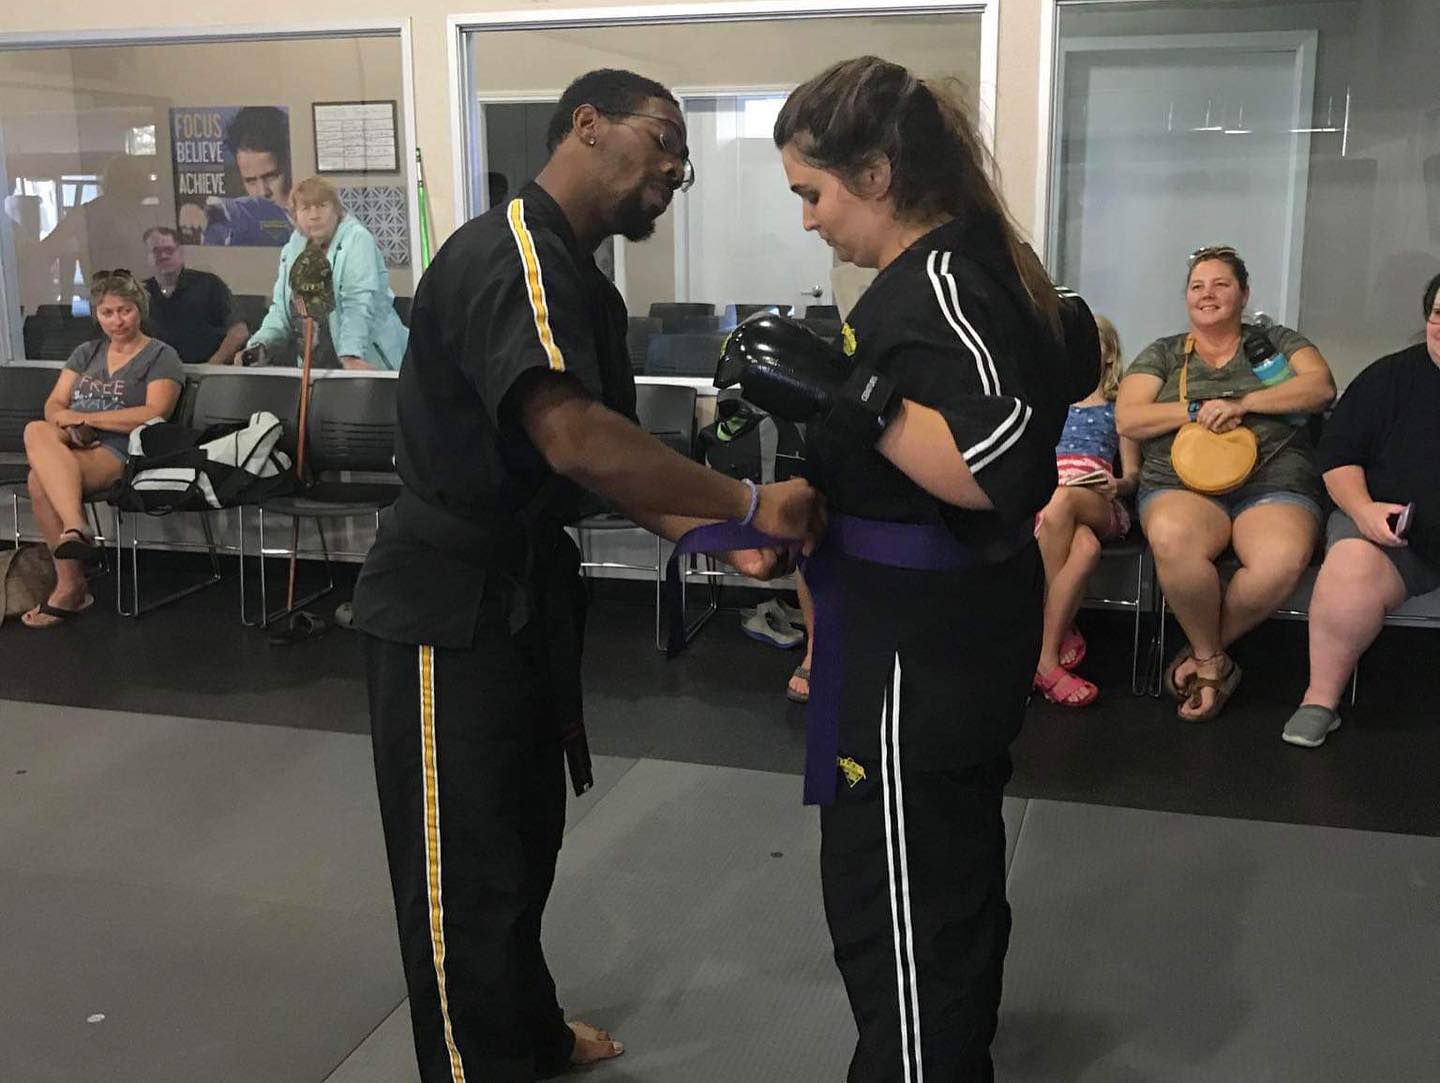 a man is giving a woman a purple belt